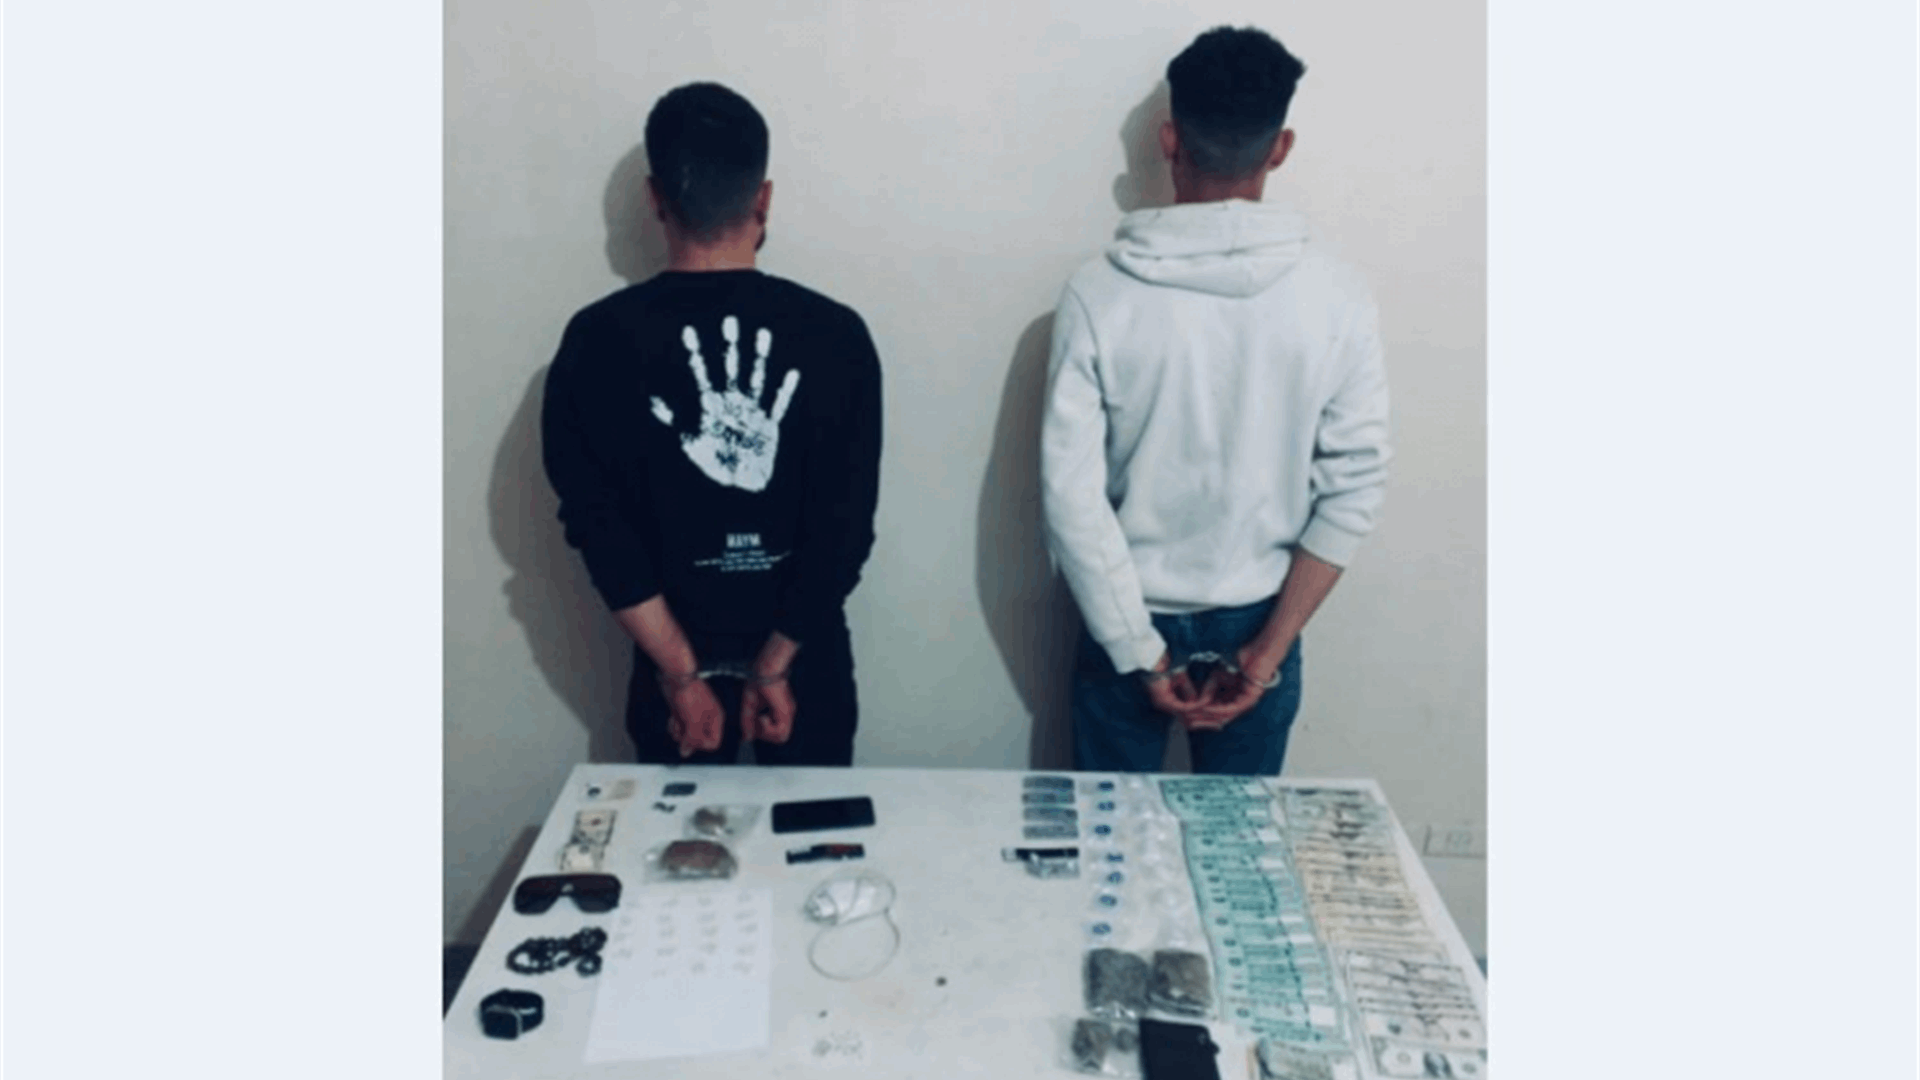 شخصان يروجان مخدرات على متن &quot;توك توك&quot; في طرابلس في قبضة الشرطة القضائية